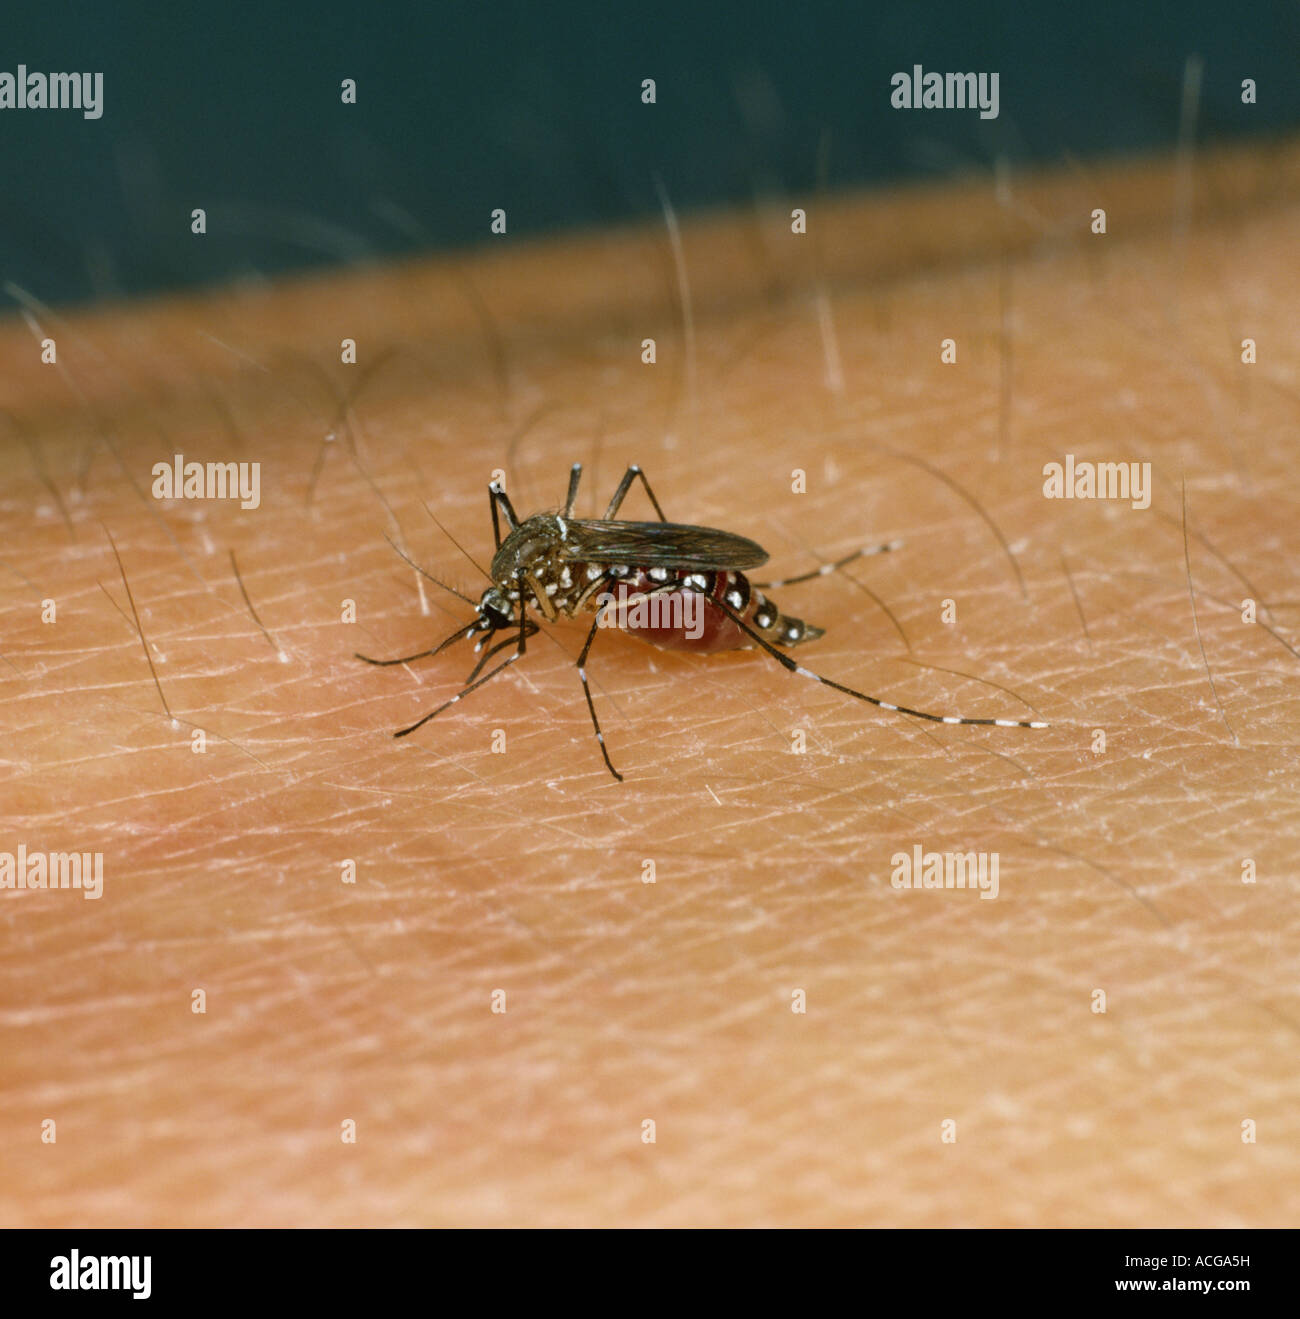 Gelbfieber-Mücke Aedes Aegypti Fütterung auf einem menschlichen Arm Vektor Stockfoto